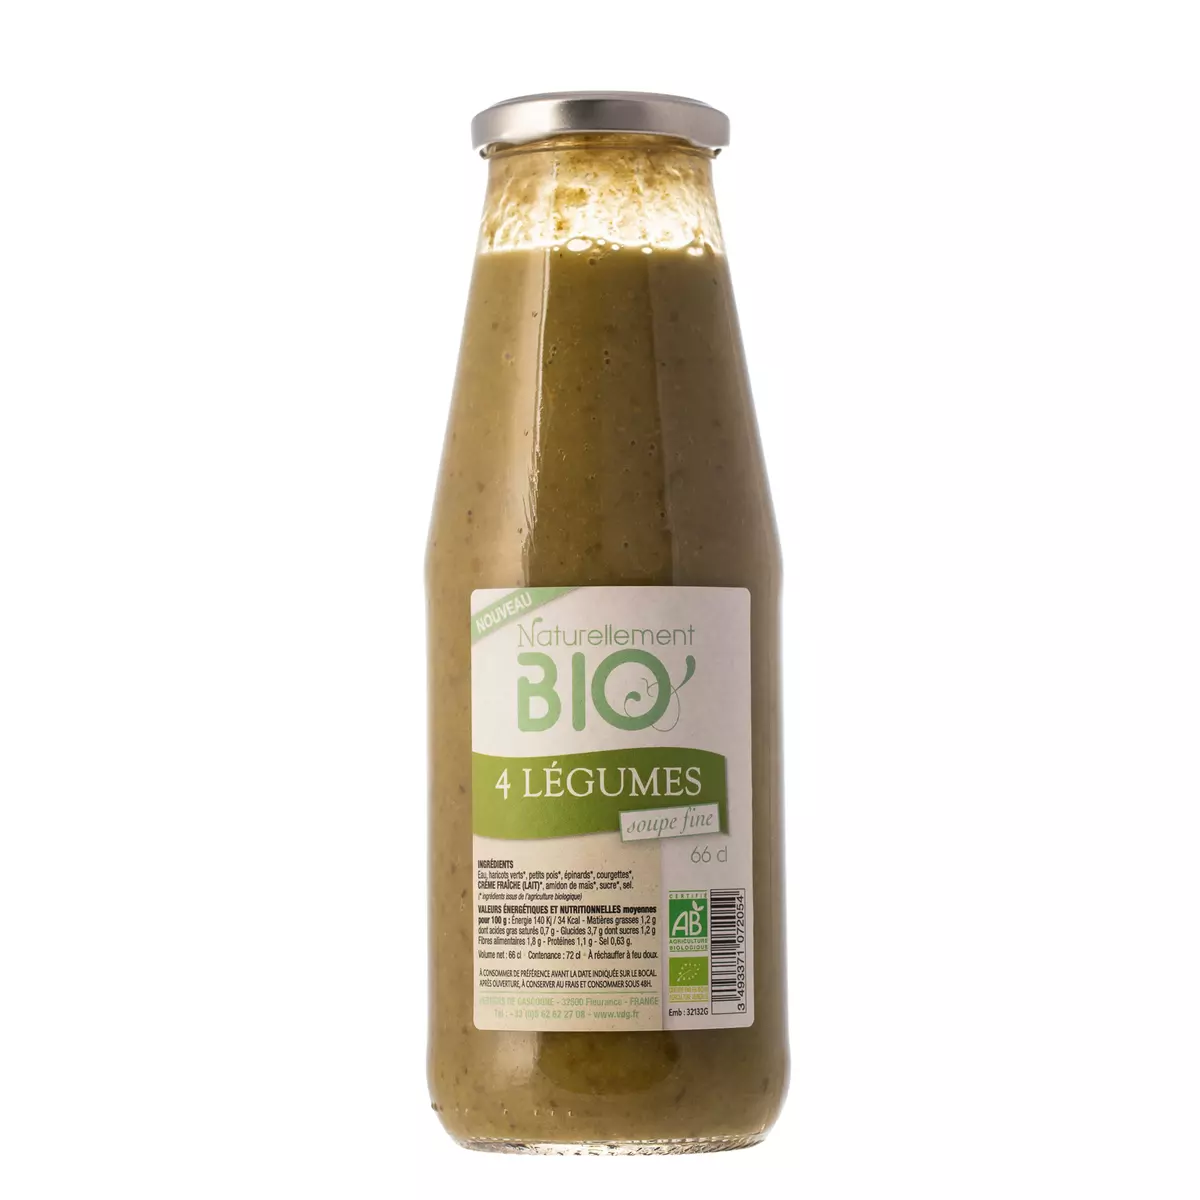 NATURELLEMENT BIO Soupe fine aux 4 légumes bio - 66cl